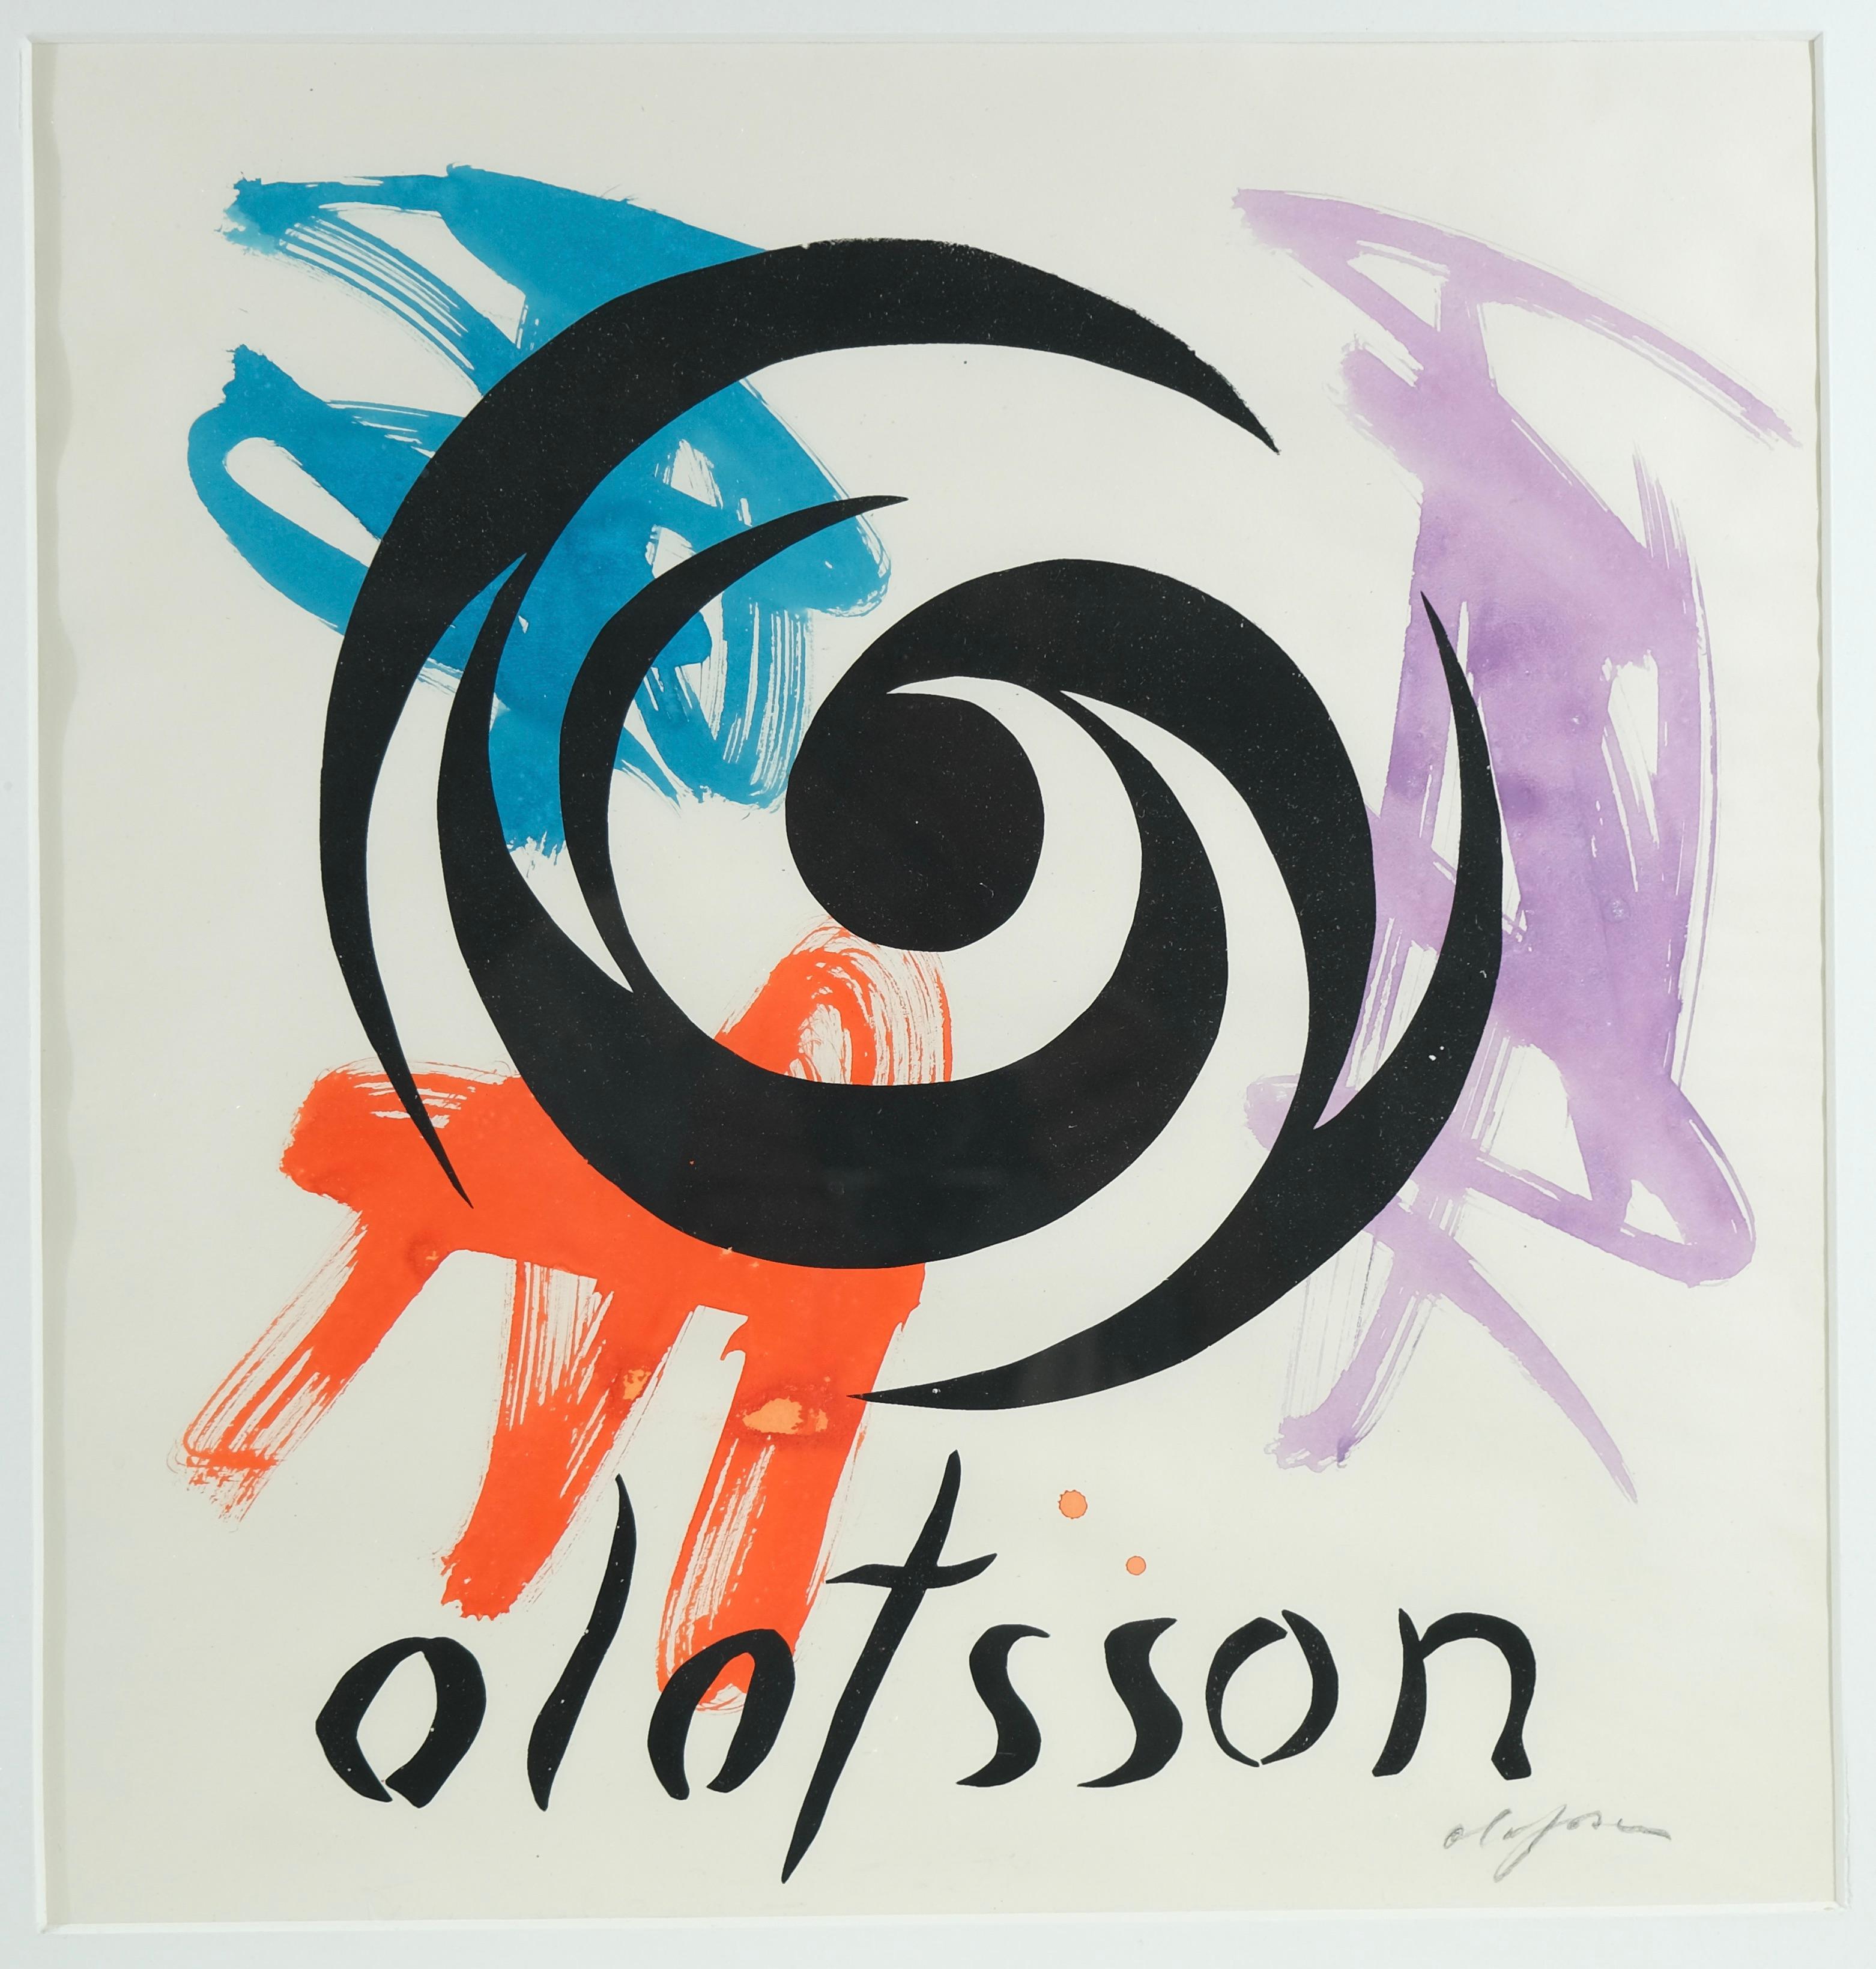 Aquarelle sur papier de Pierre Olofson (1921-1996). Probablement fait pour une de ses expositions. Signé.

Pierre Olofson est l'un des principaux artistes suédois de la seconde moitié du XXe siècle. Il est représenté dans plusieurs collections de